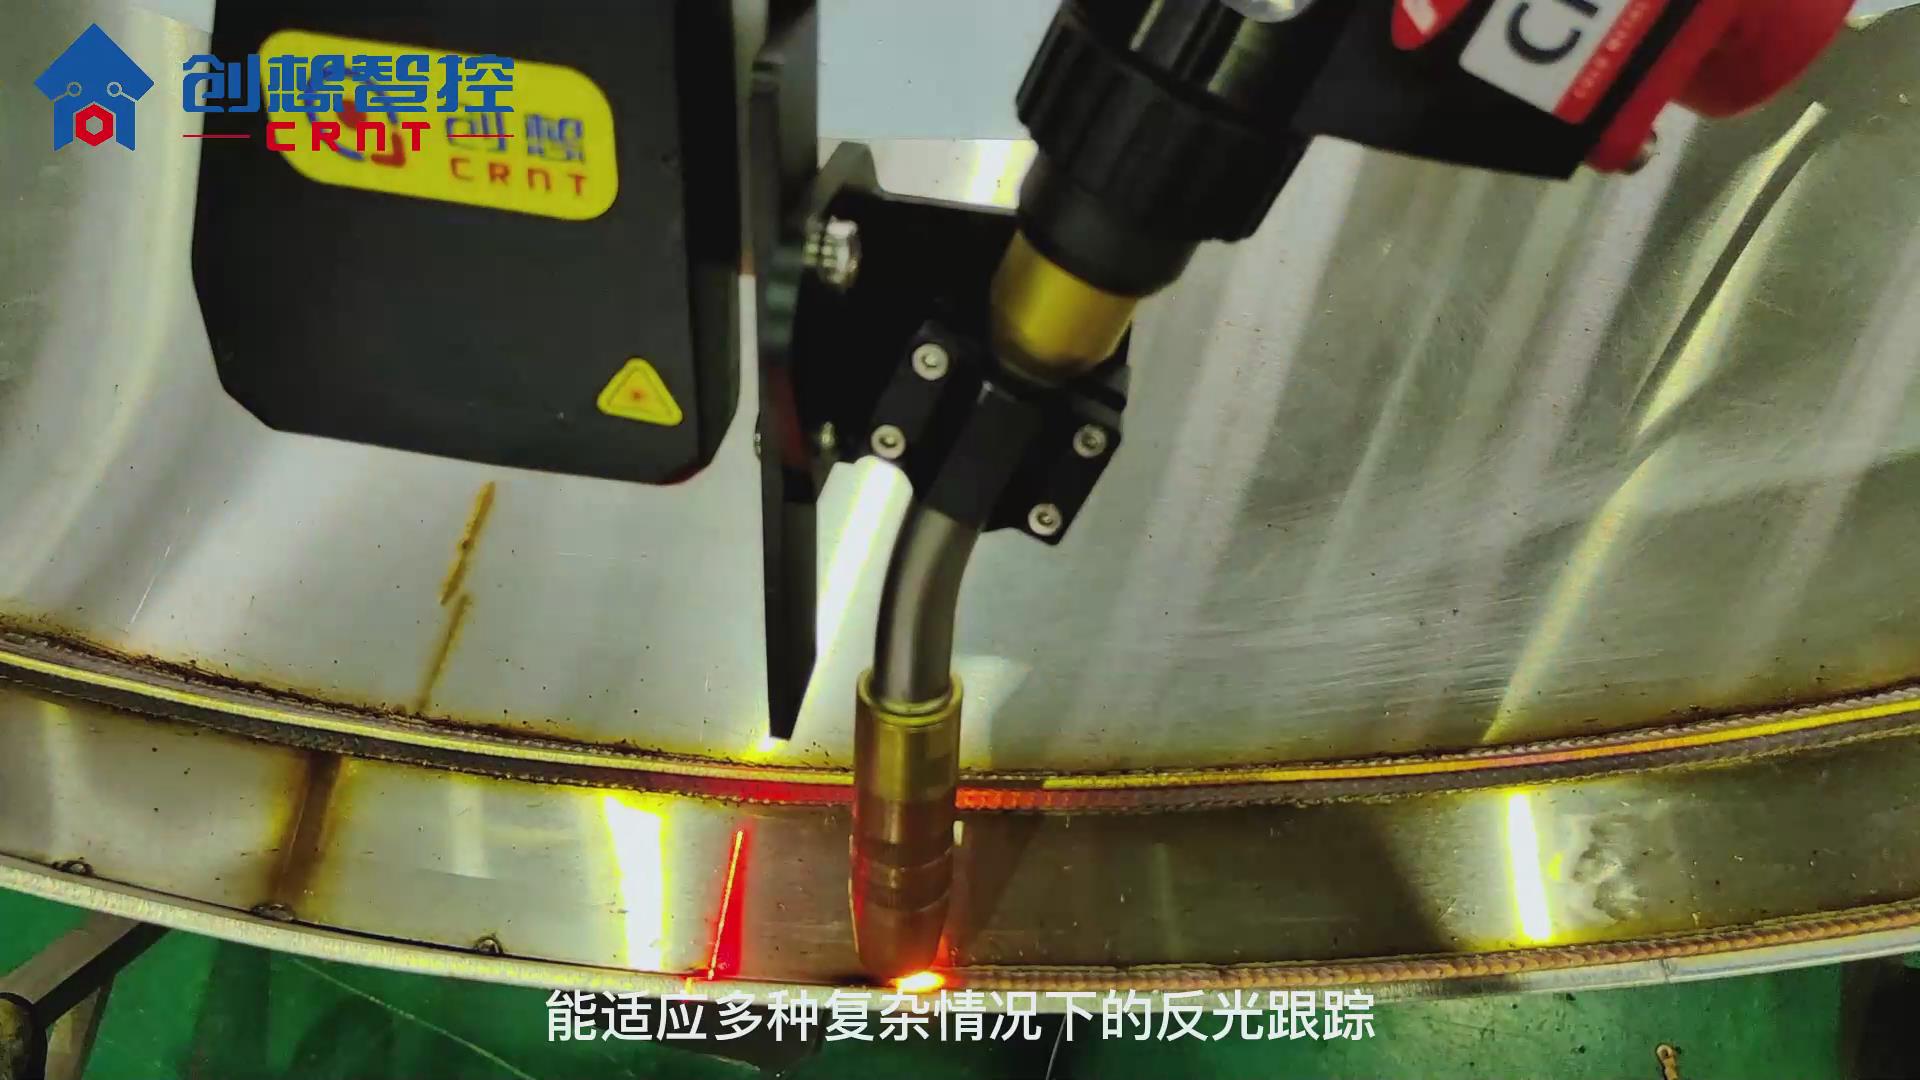 创想激光焊缝跟踪系统适配ABB机器人进行自动焊接的案例集锦